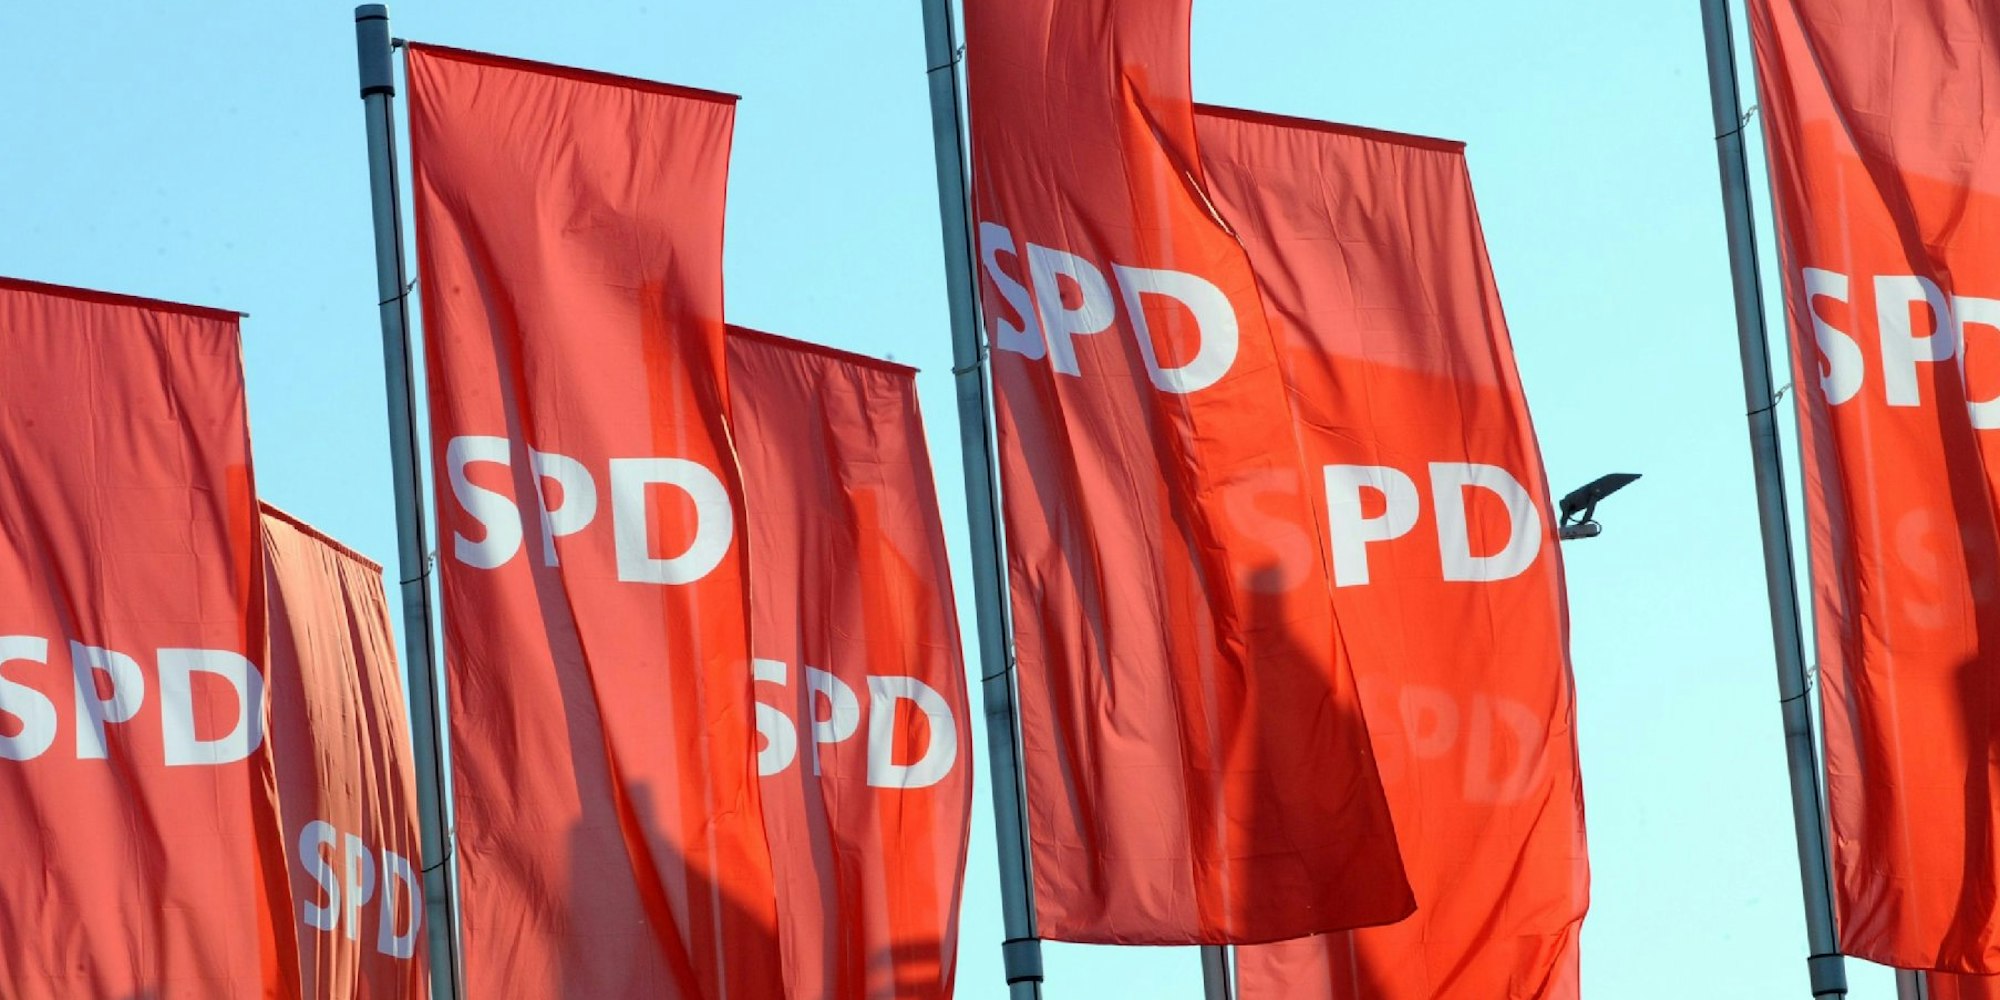 Die SPD blickt auf eine 150-jährige Geschichte zurück.